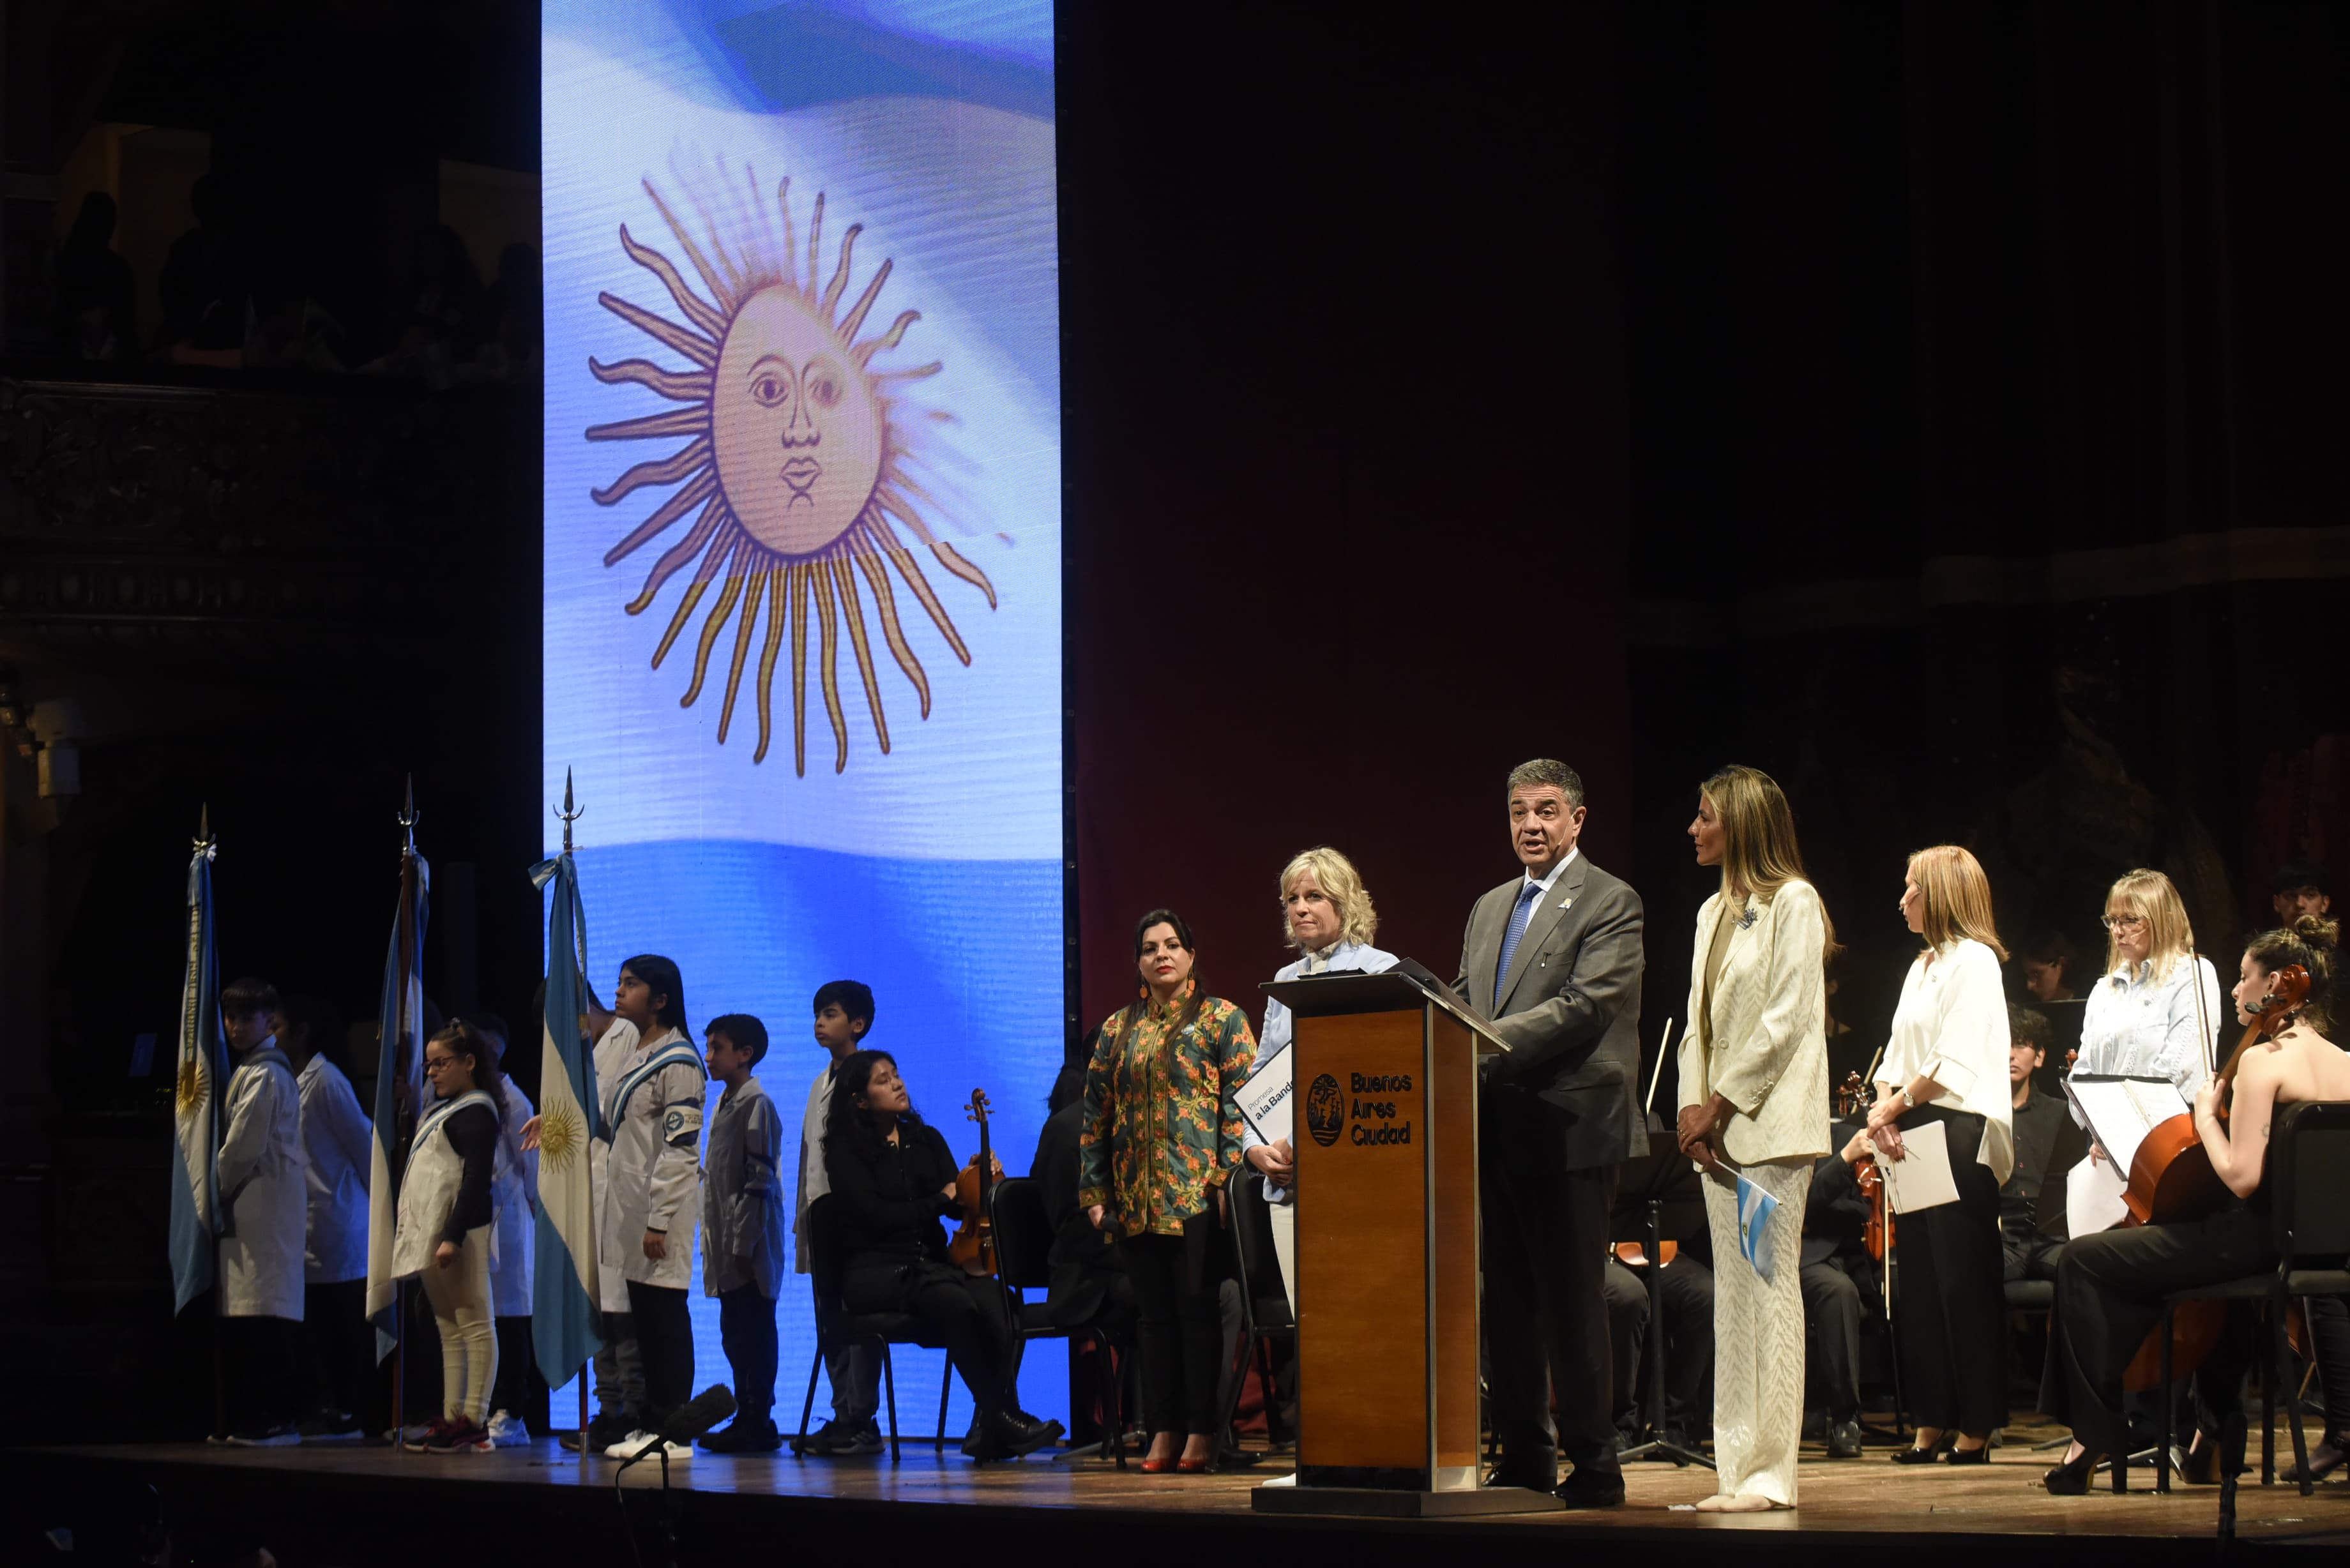 Jorge Macri les tomó la Promesa a la Bandera a más de 900 alumnos en una emotiva ceremonia en el Teatro Colón